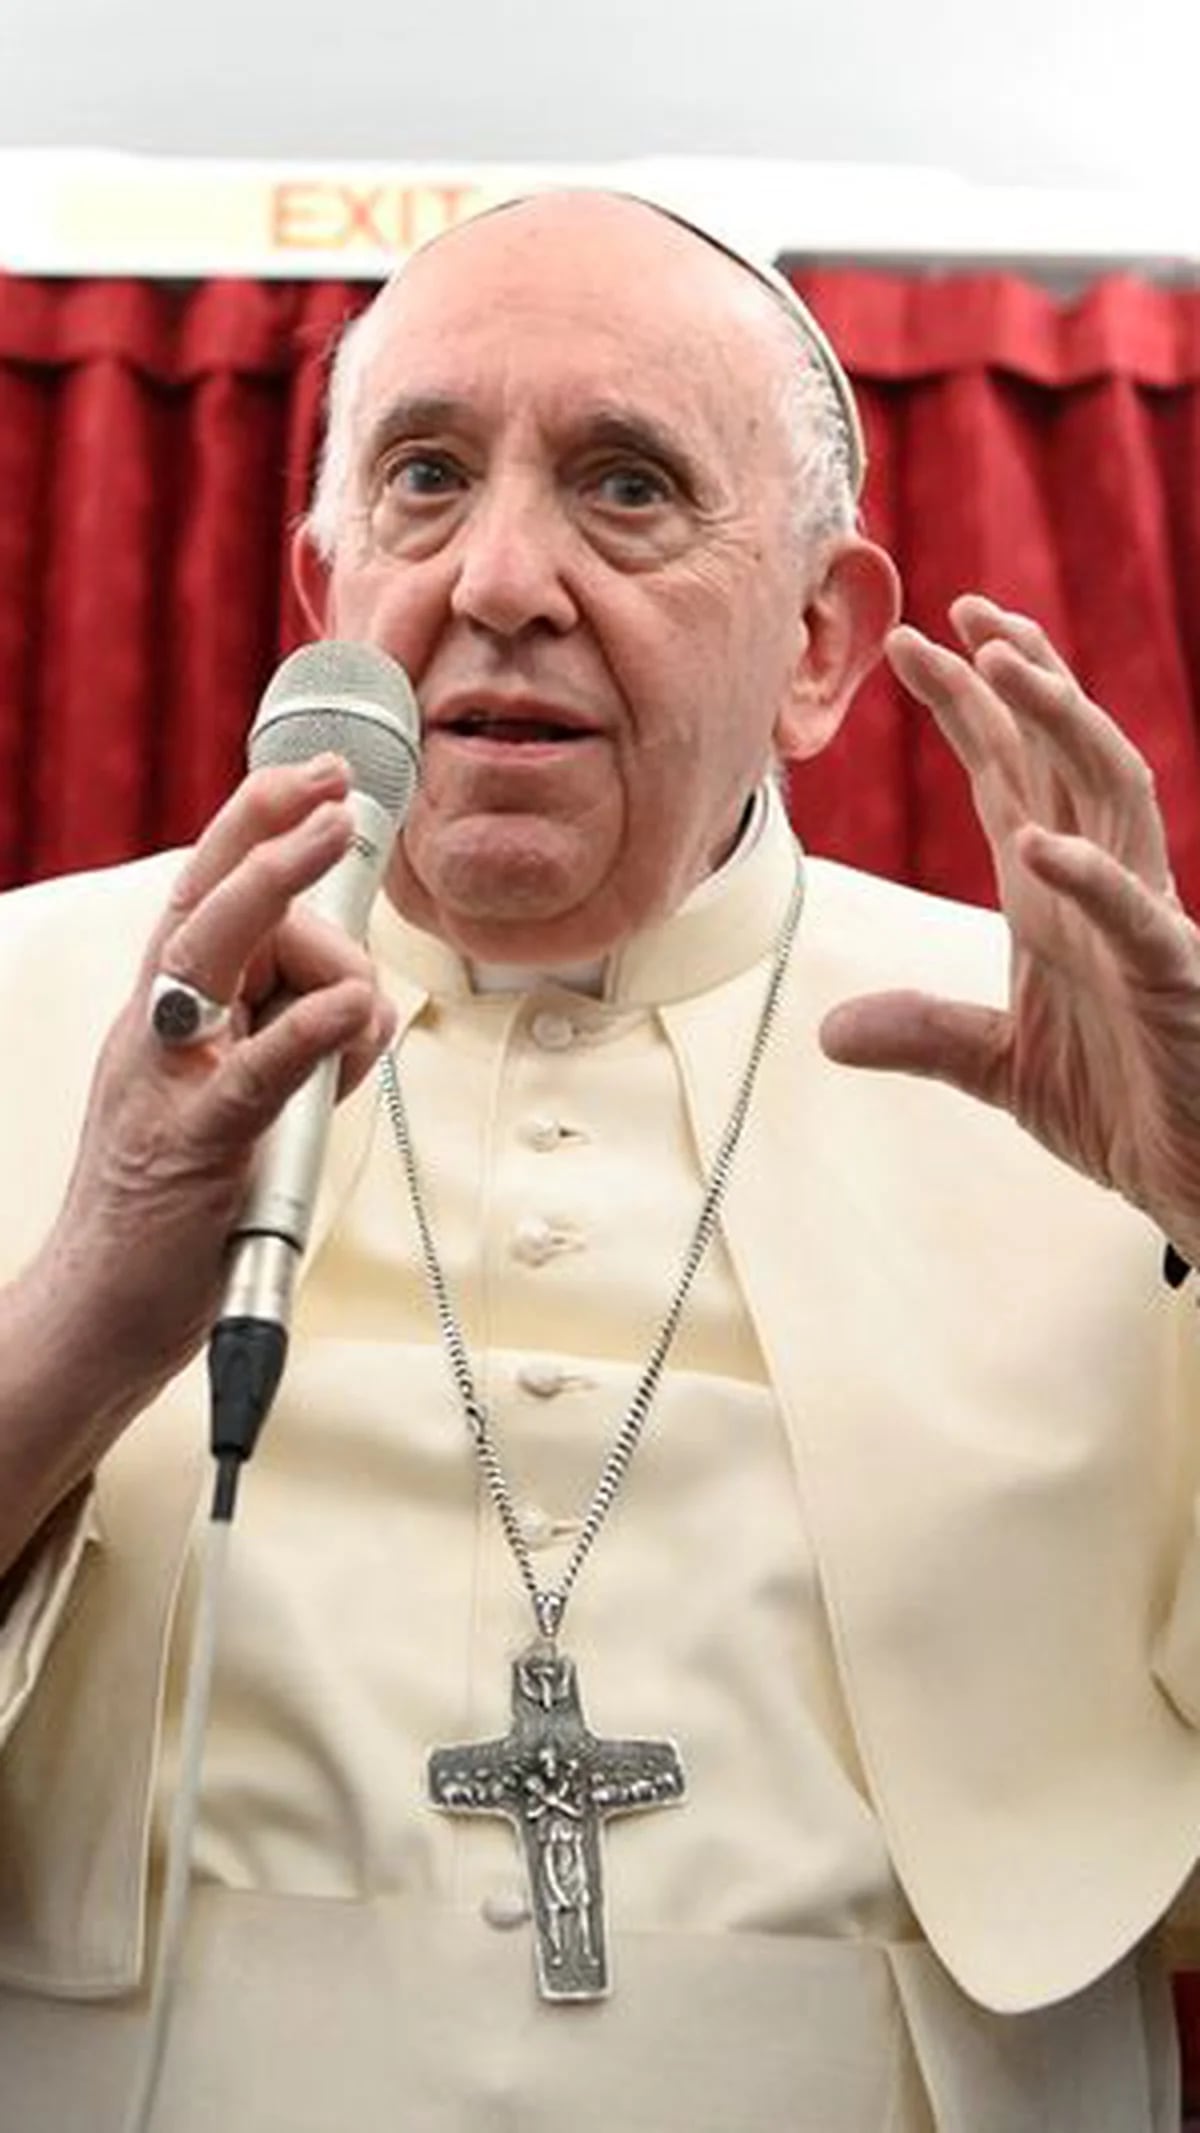 Qué es la coprofilia, la palabra que usó el Papa Francisco para referirse a  los medios de comunicación - El Litoral